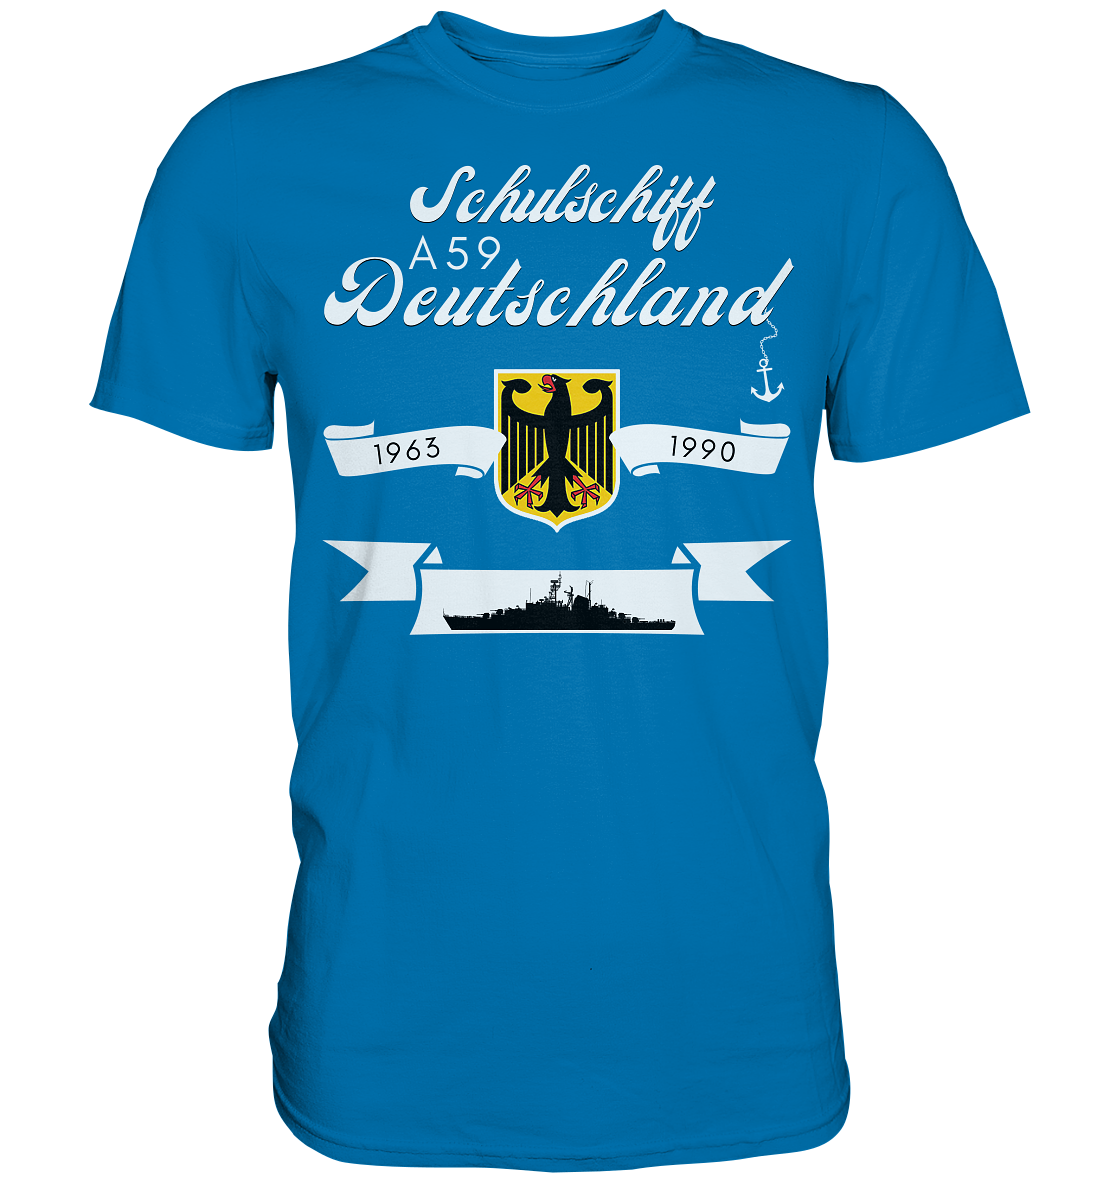 Schulschiffe A59 DEUTSCHLAND 1963-1990 - Premium Shirt